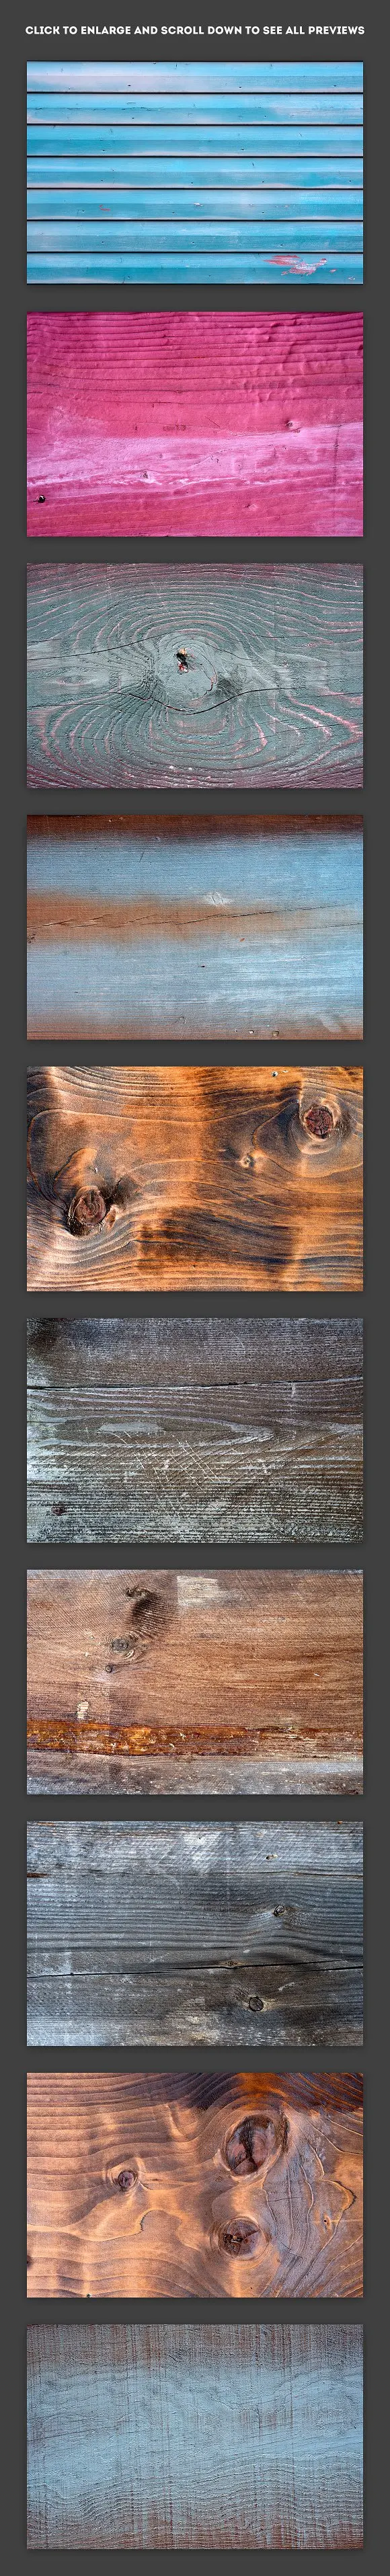 平面素材-35张超高清多彩的天然彩色的木头背景纹理JPG图片素材(5)